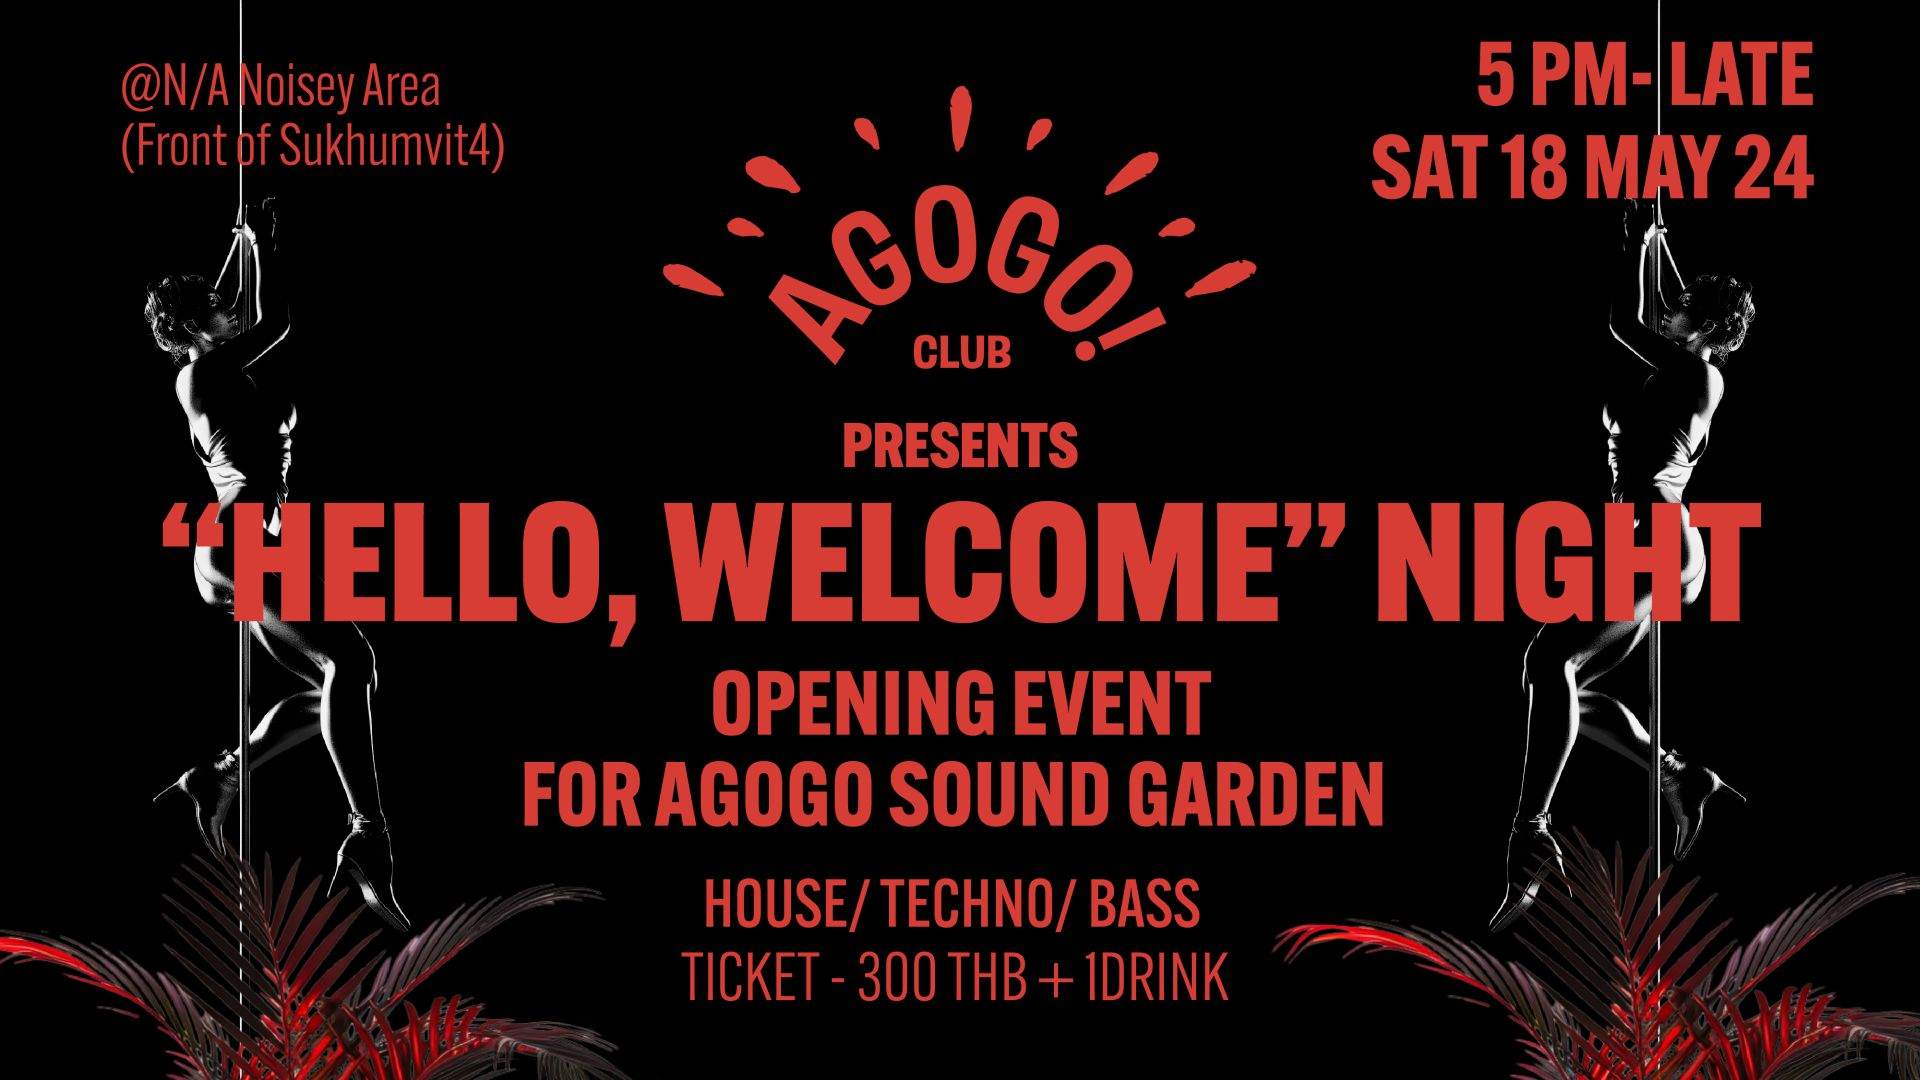 Hello, Welcome Night at Agogo Sound Garden - フライヤー表